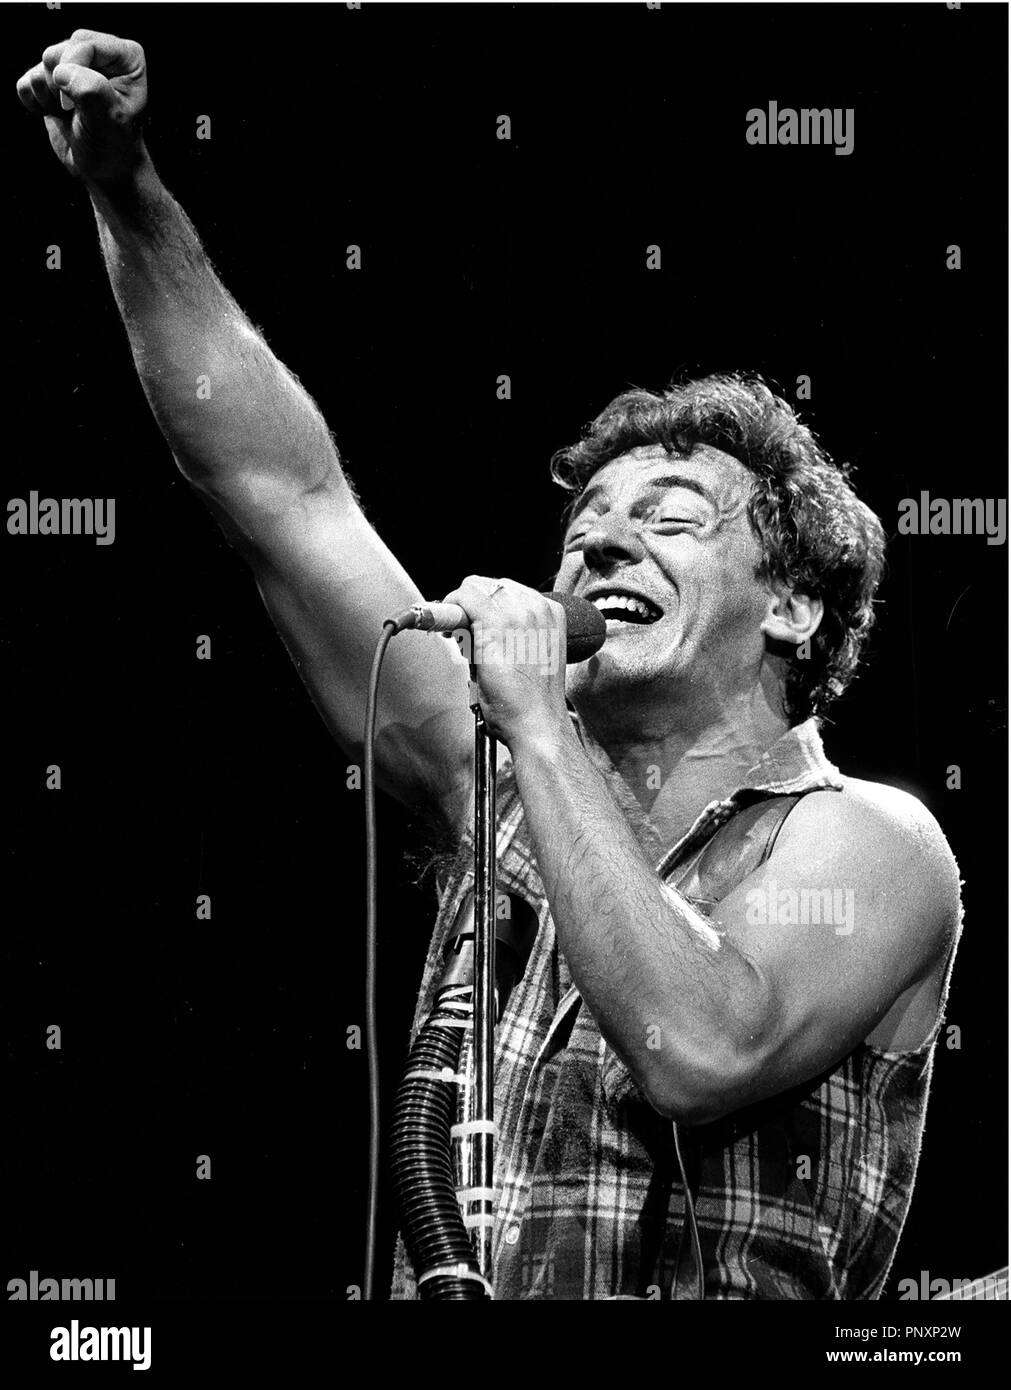 Bruce Springsteen en concert au Cotton Bowl de Dallas Tx 1985 Banque D'Images